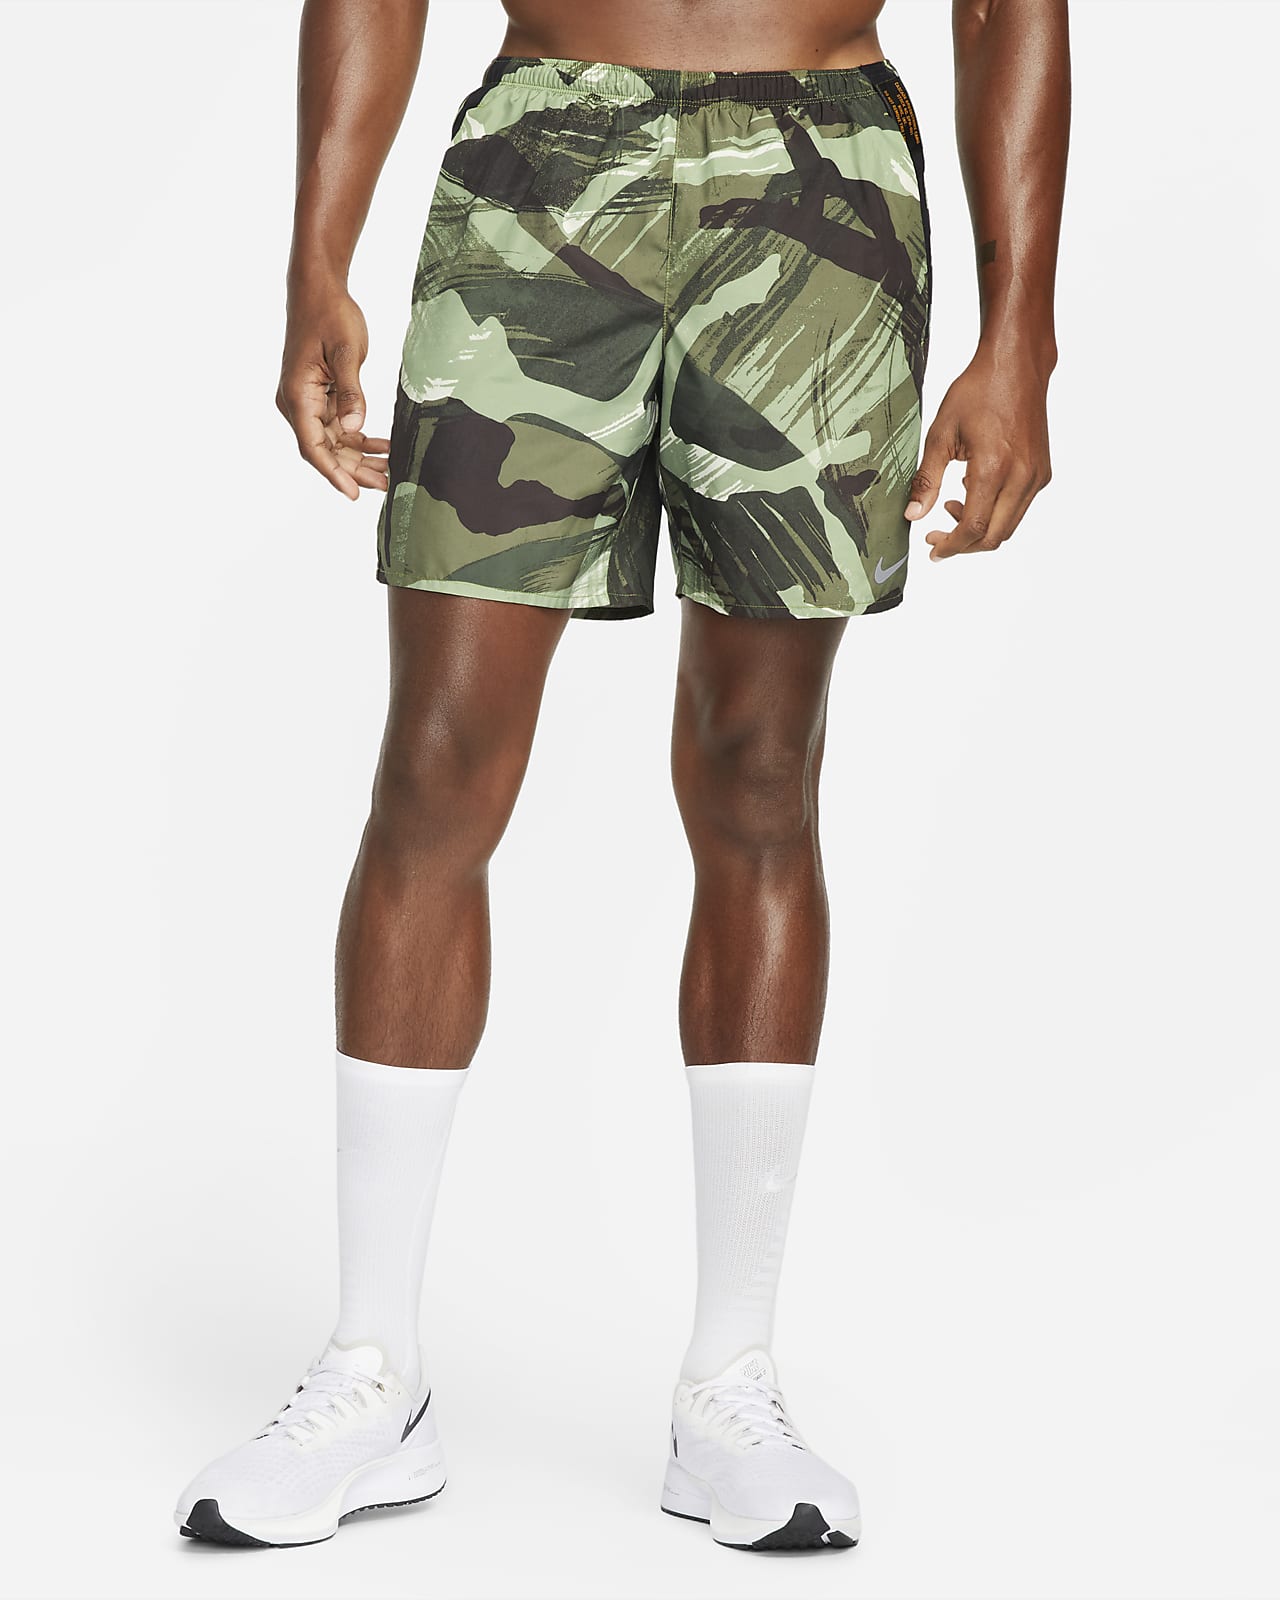 Short de running camouflage avec sous-short intégré 18 cm Nike Challenger pour Homme